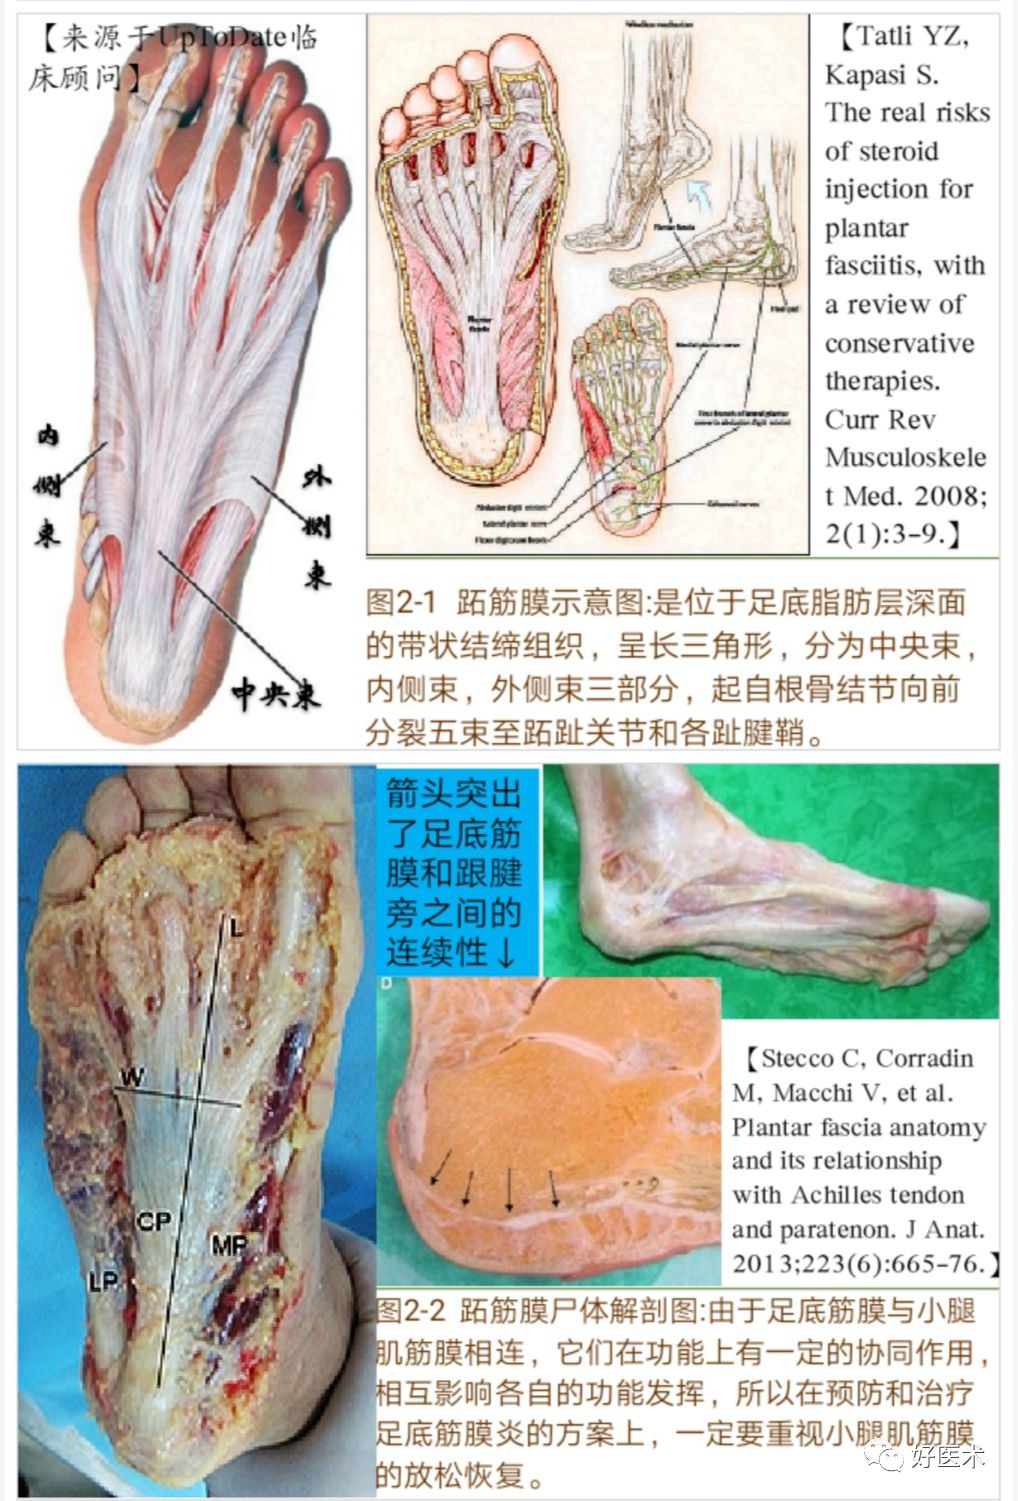 跖腱膜解剖图片